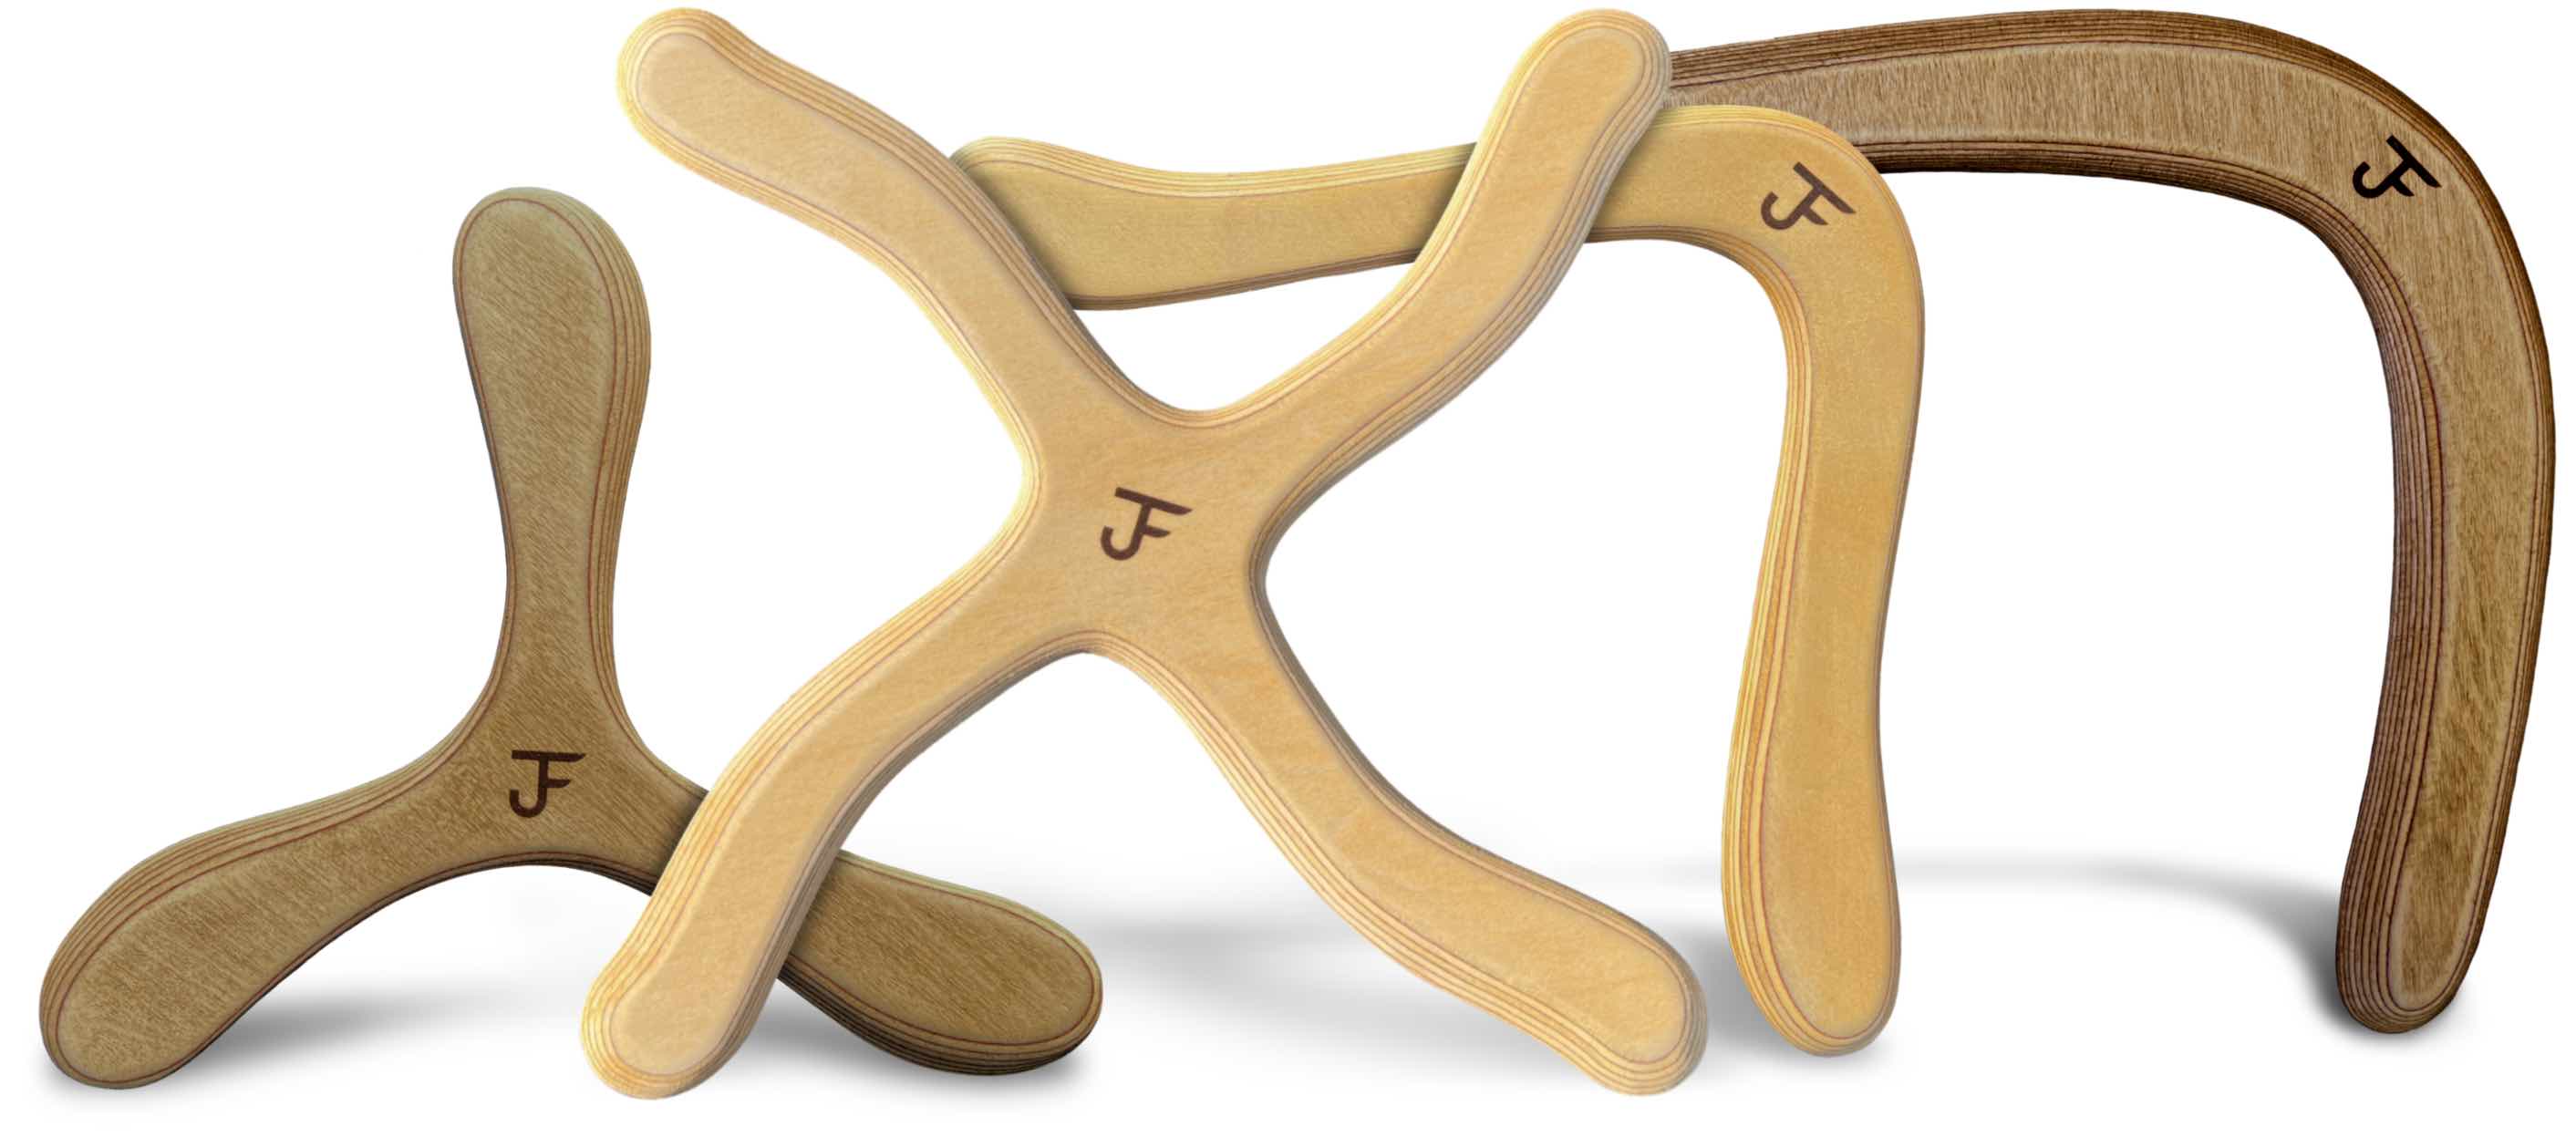 JF Bumerang - Bumerang kaufen - alle vier Modelle im Überblick